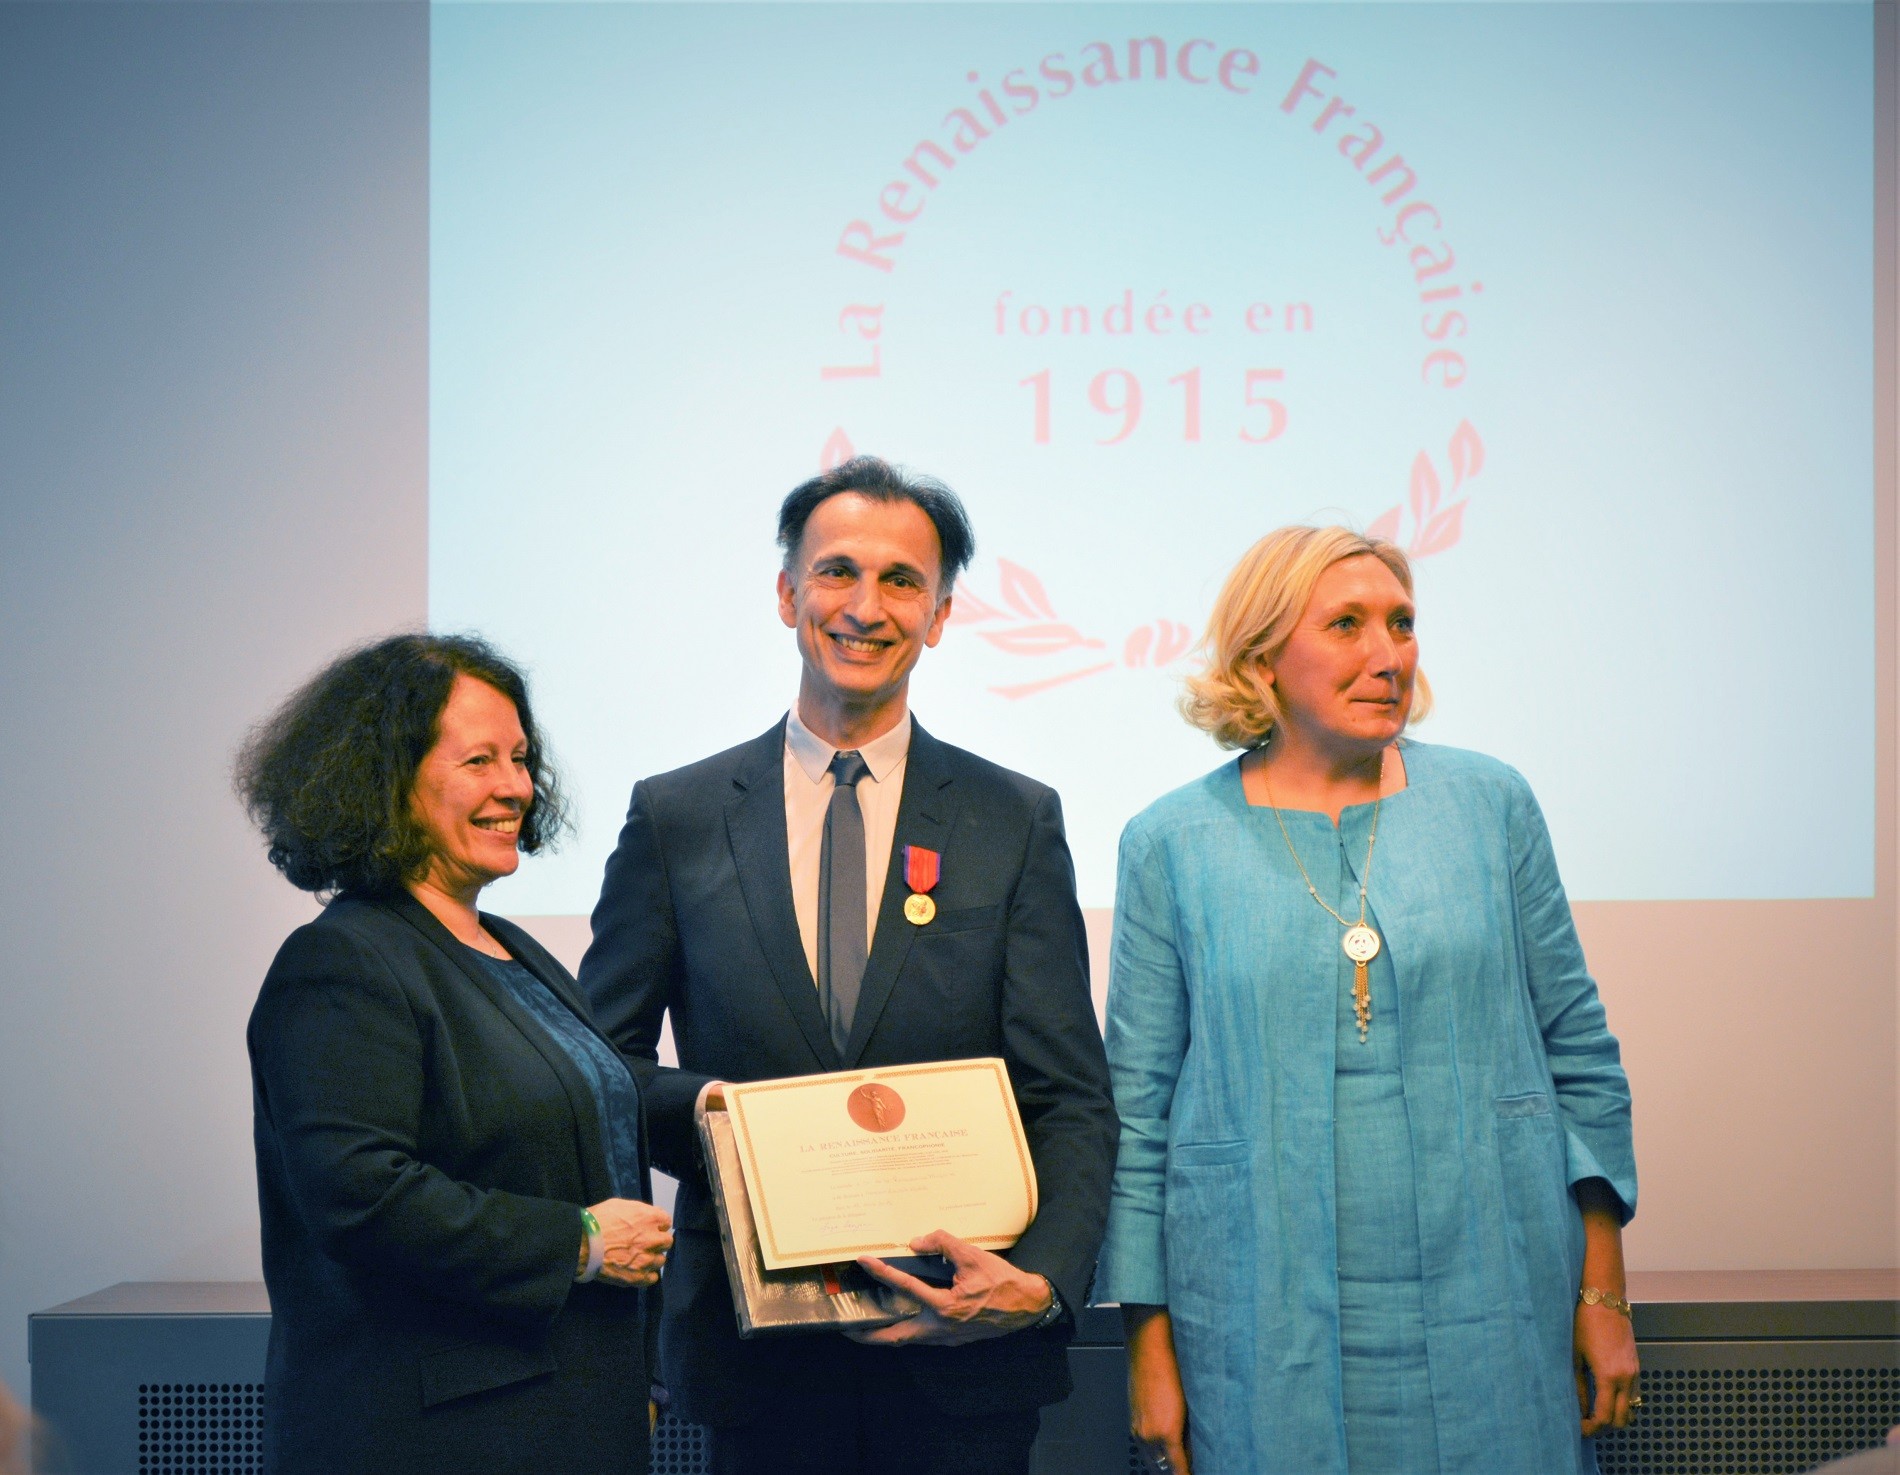 Laurent Hilaire, entouré de Sylvie Bermann (à gauche), ambassadeur de France en Russie, et de Zoya Arrignon (à droite), présidente de la Renaissance Française en Russie.